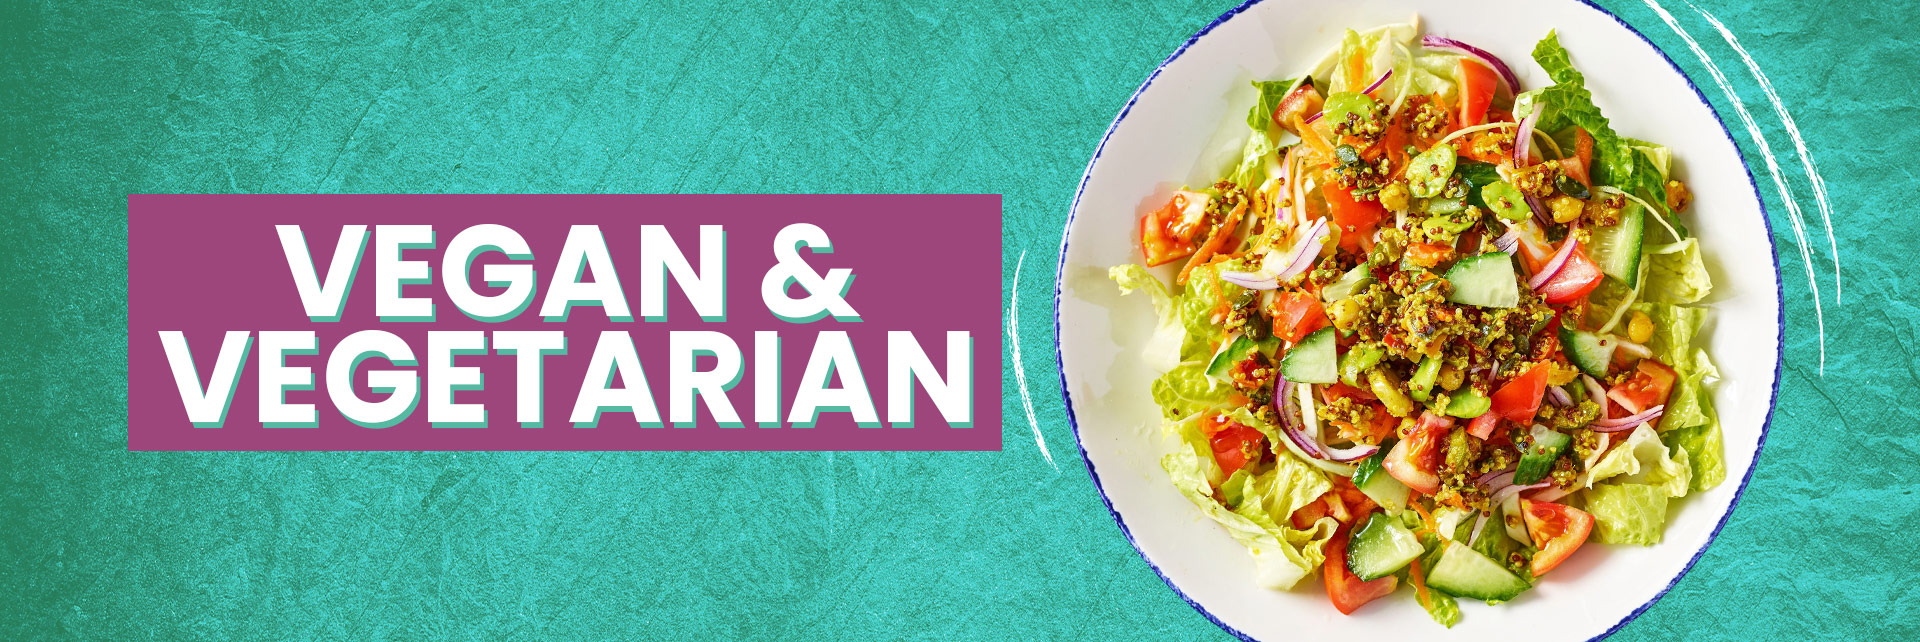 Vegan & Vegetarian Menu at Acorn